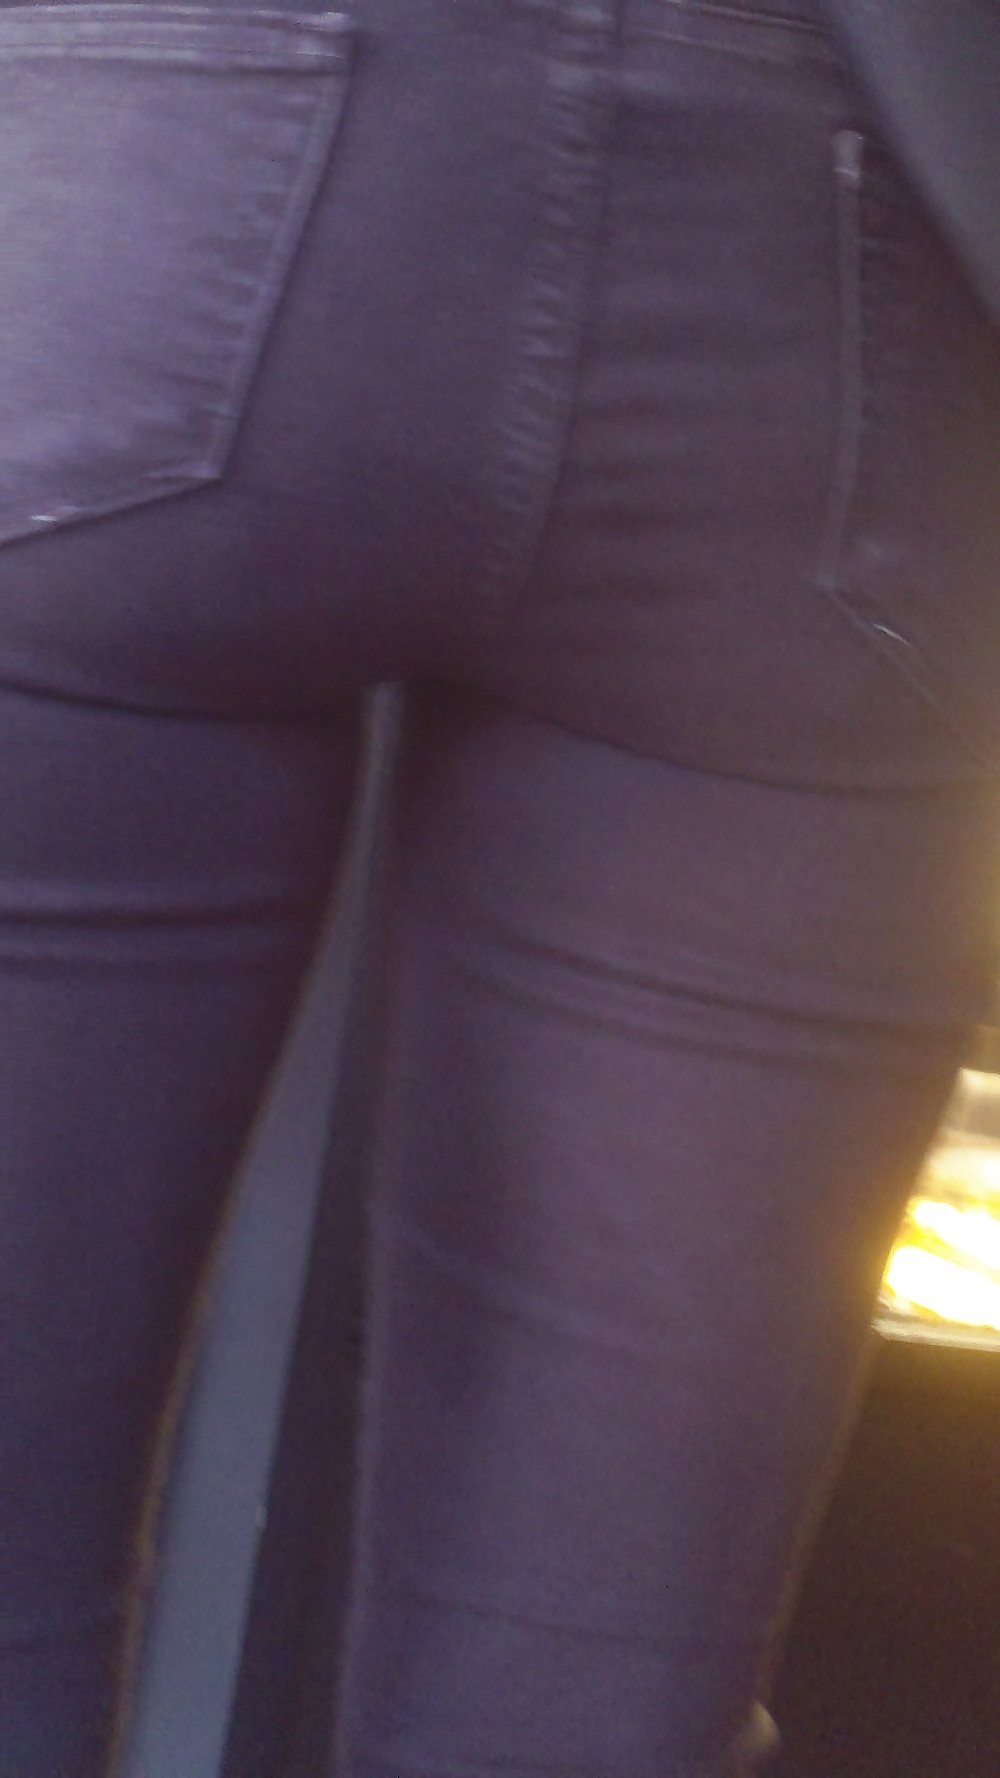 Popular teen girls ass & butt in jeans part 3 #25401296